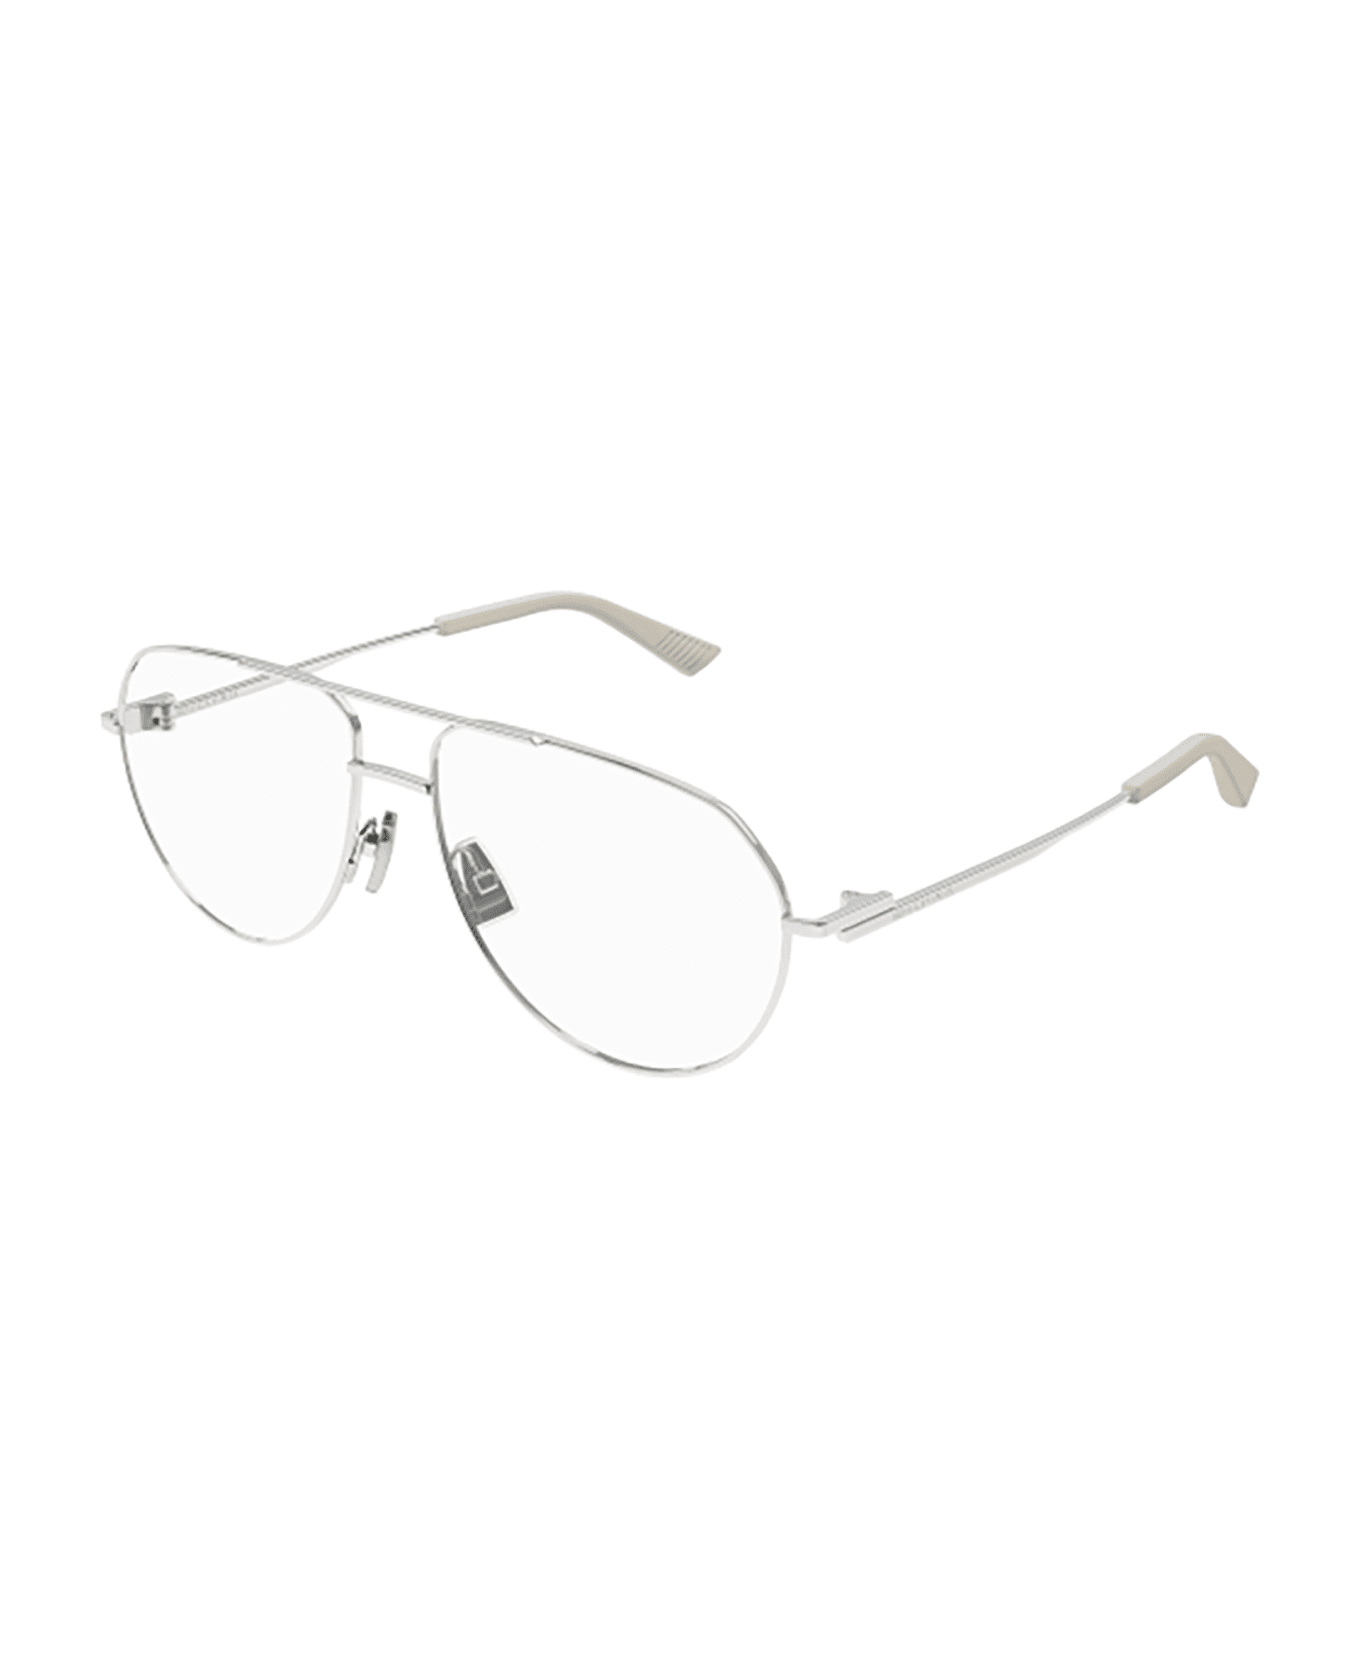 Bottega Veneta Eyewear Bv1302o Glasses - 002 silver silver transpa アイウェア